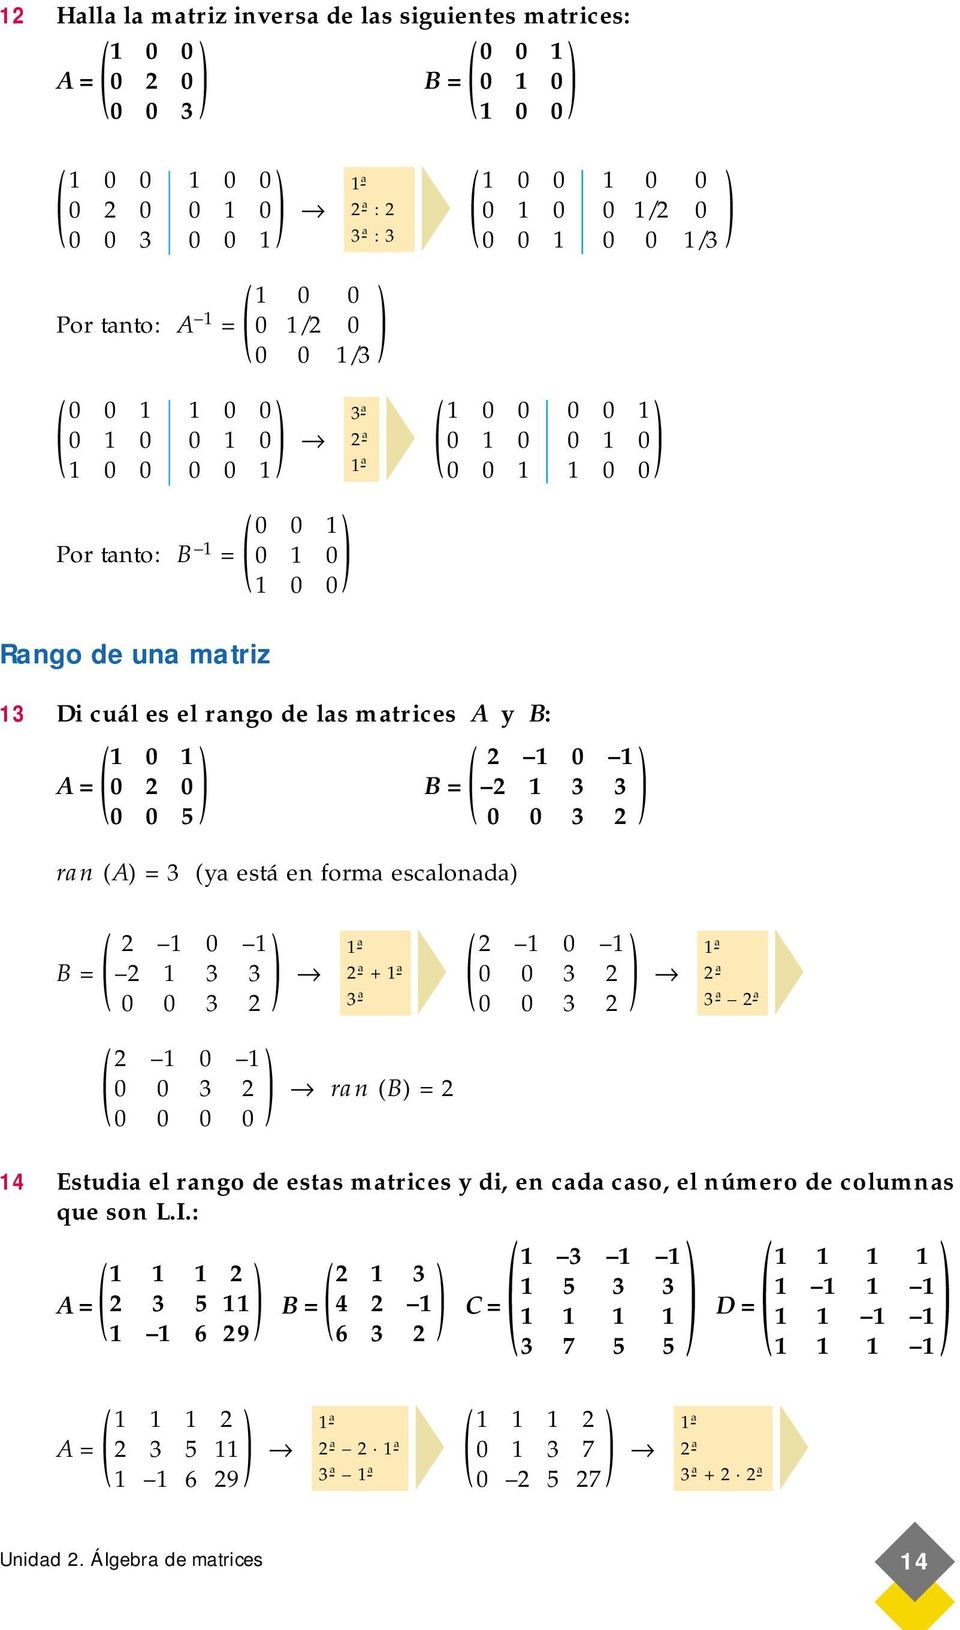 escalonada /3 0 0 3 0 3 3 0 0 3 B = 0 0 0 3 0 0 0 0 + 3-ª ran B = 0 0 0 3 0 0 3 3-ª 4 Estudia el rango de estas matrices y di, en cada